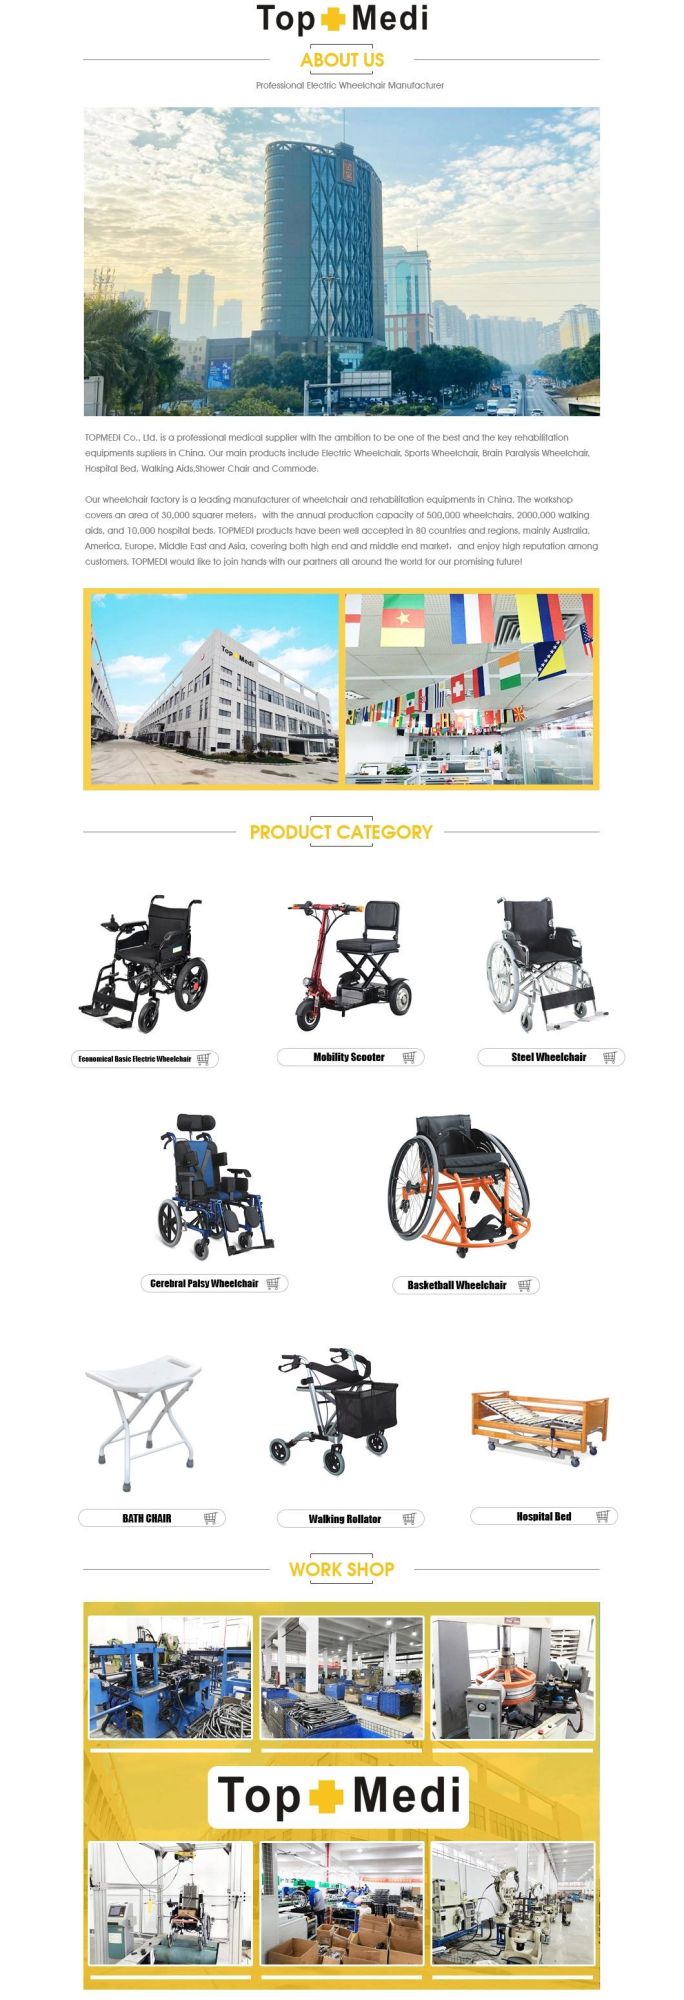 Philippine Government Model Chromed Steel Frame Folding Mag Wheel Wheelchair